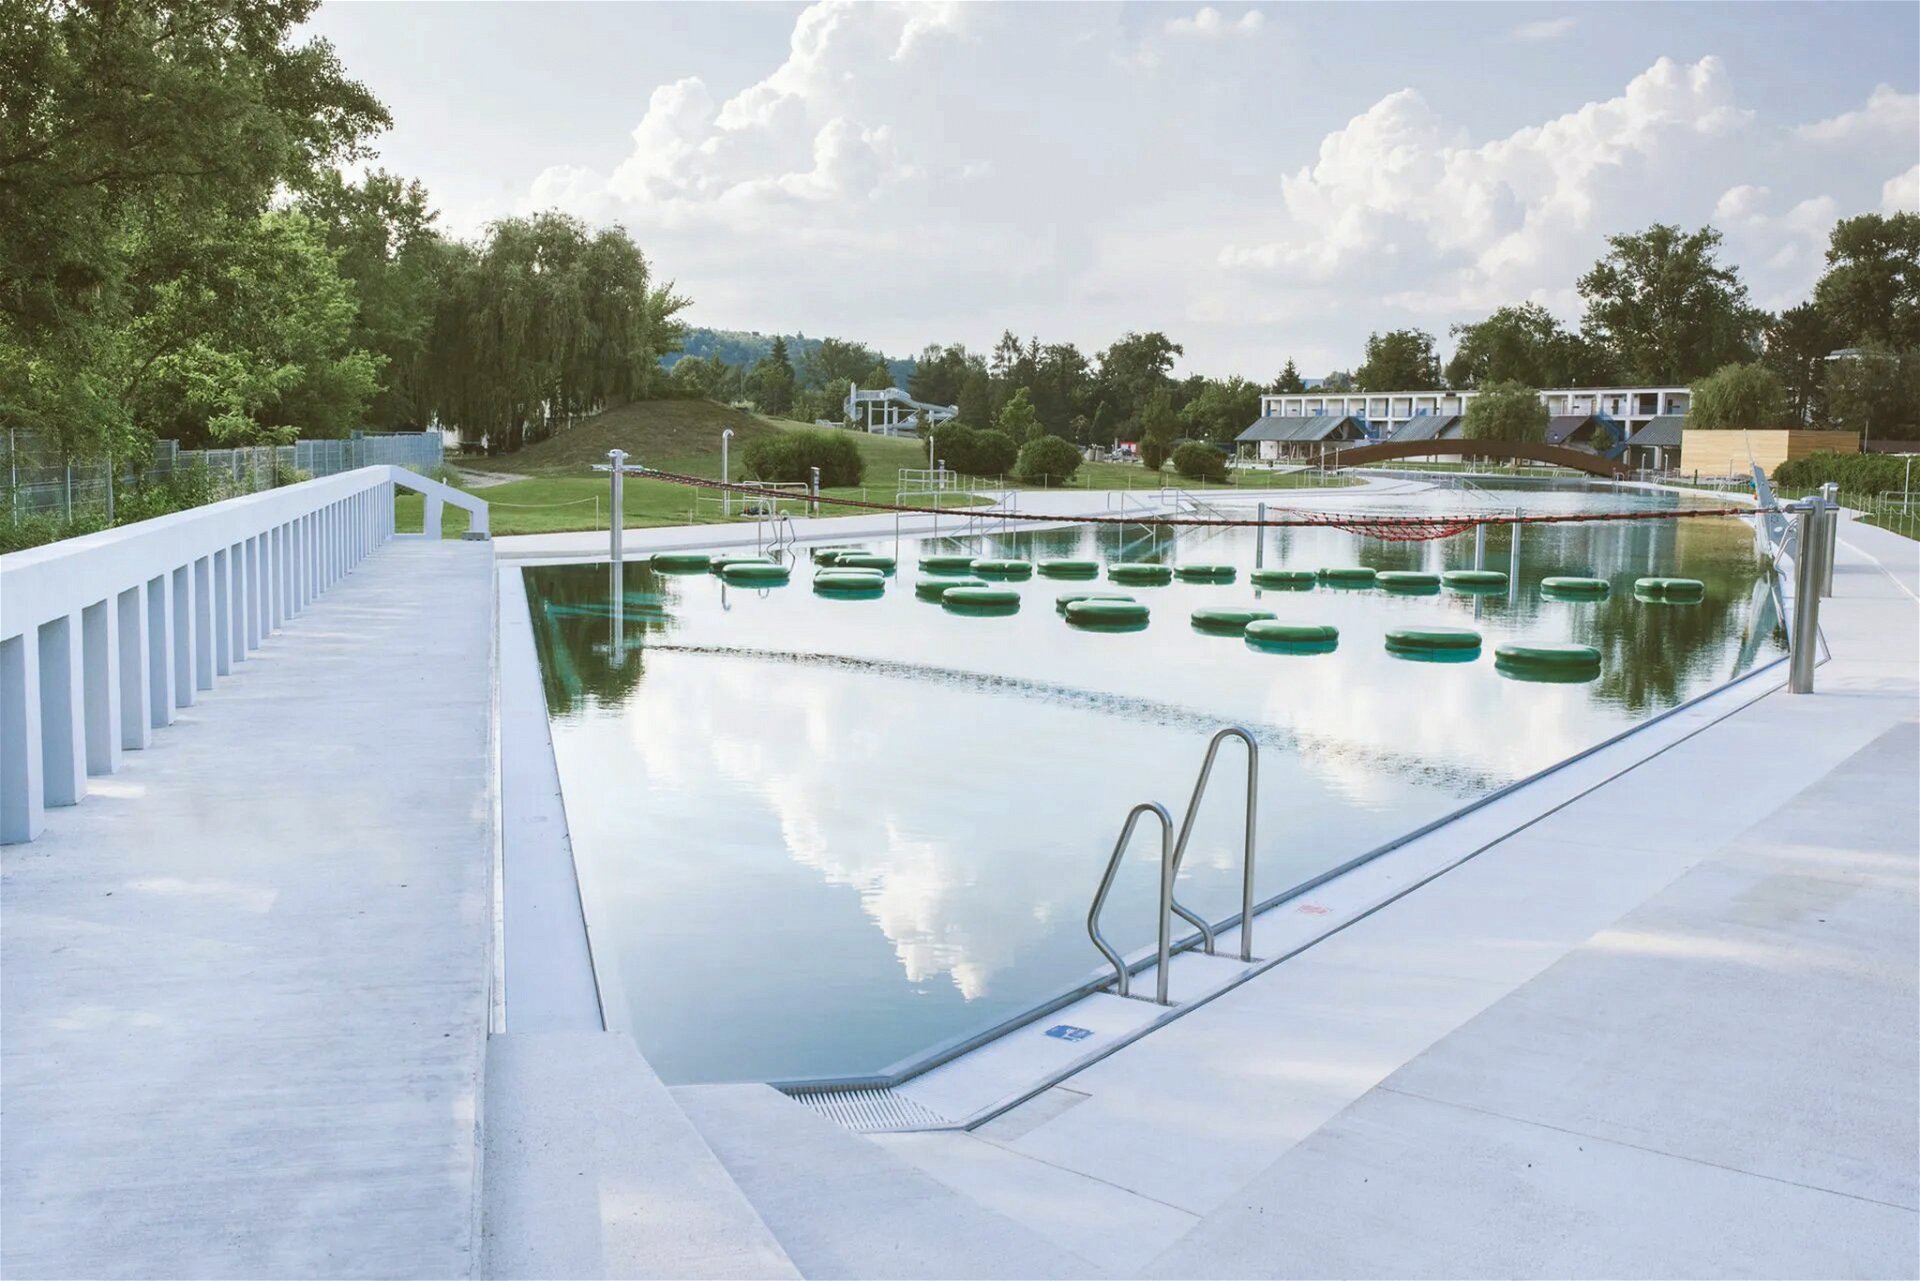 Freibad Riviéra Atelier A77, 2018 »Eines der größten natürlichen Freibäder Tschechiens. Die Riviéra besteht aus drei separaten Pools, die zusammen einen Nebenarm des Flusses nachbilden, der auch das Wasser liefert.«